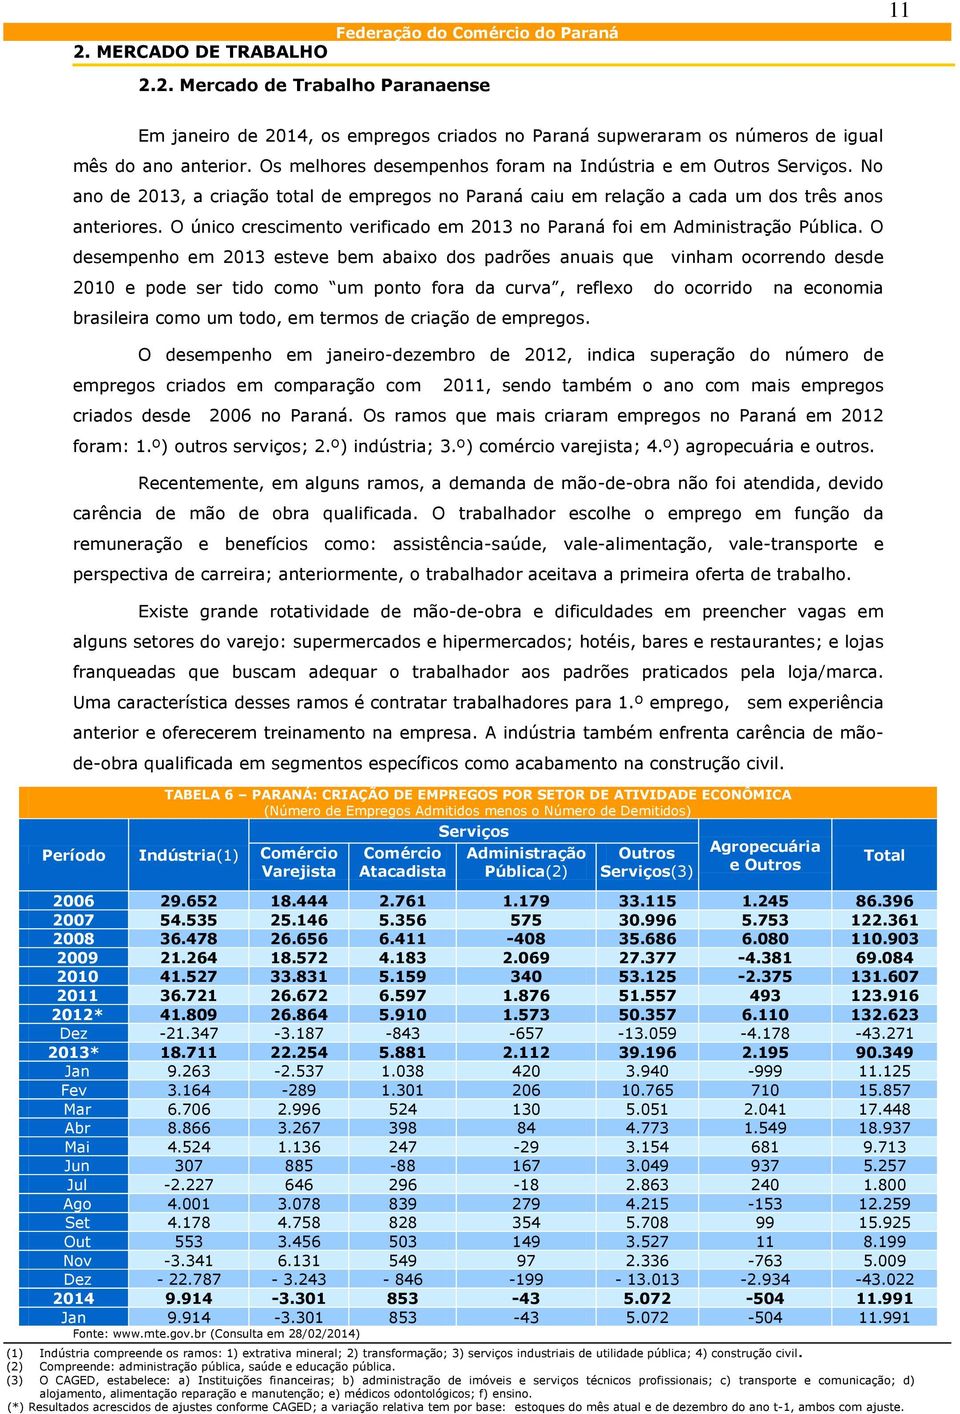 O único crescimento verificado em 2013 no Paraná foi em Administração Pública.